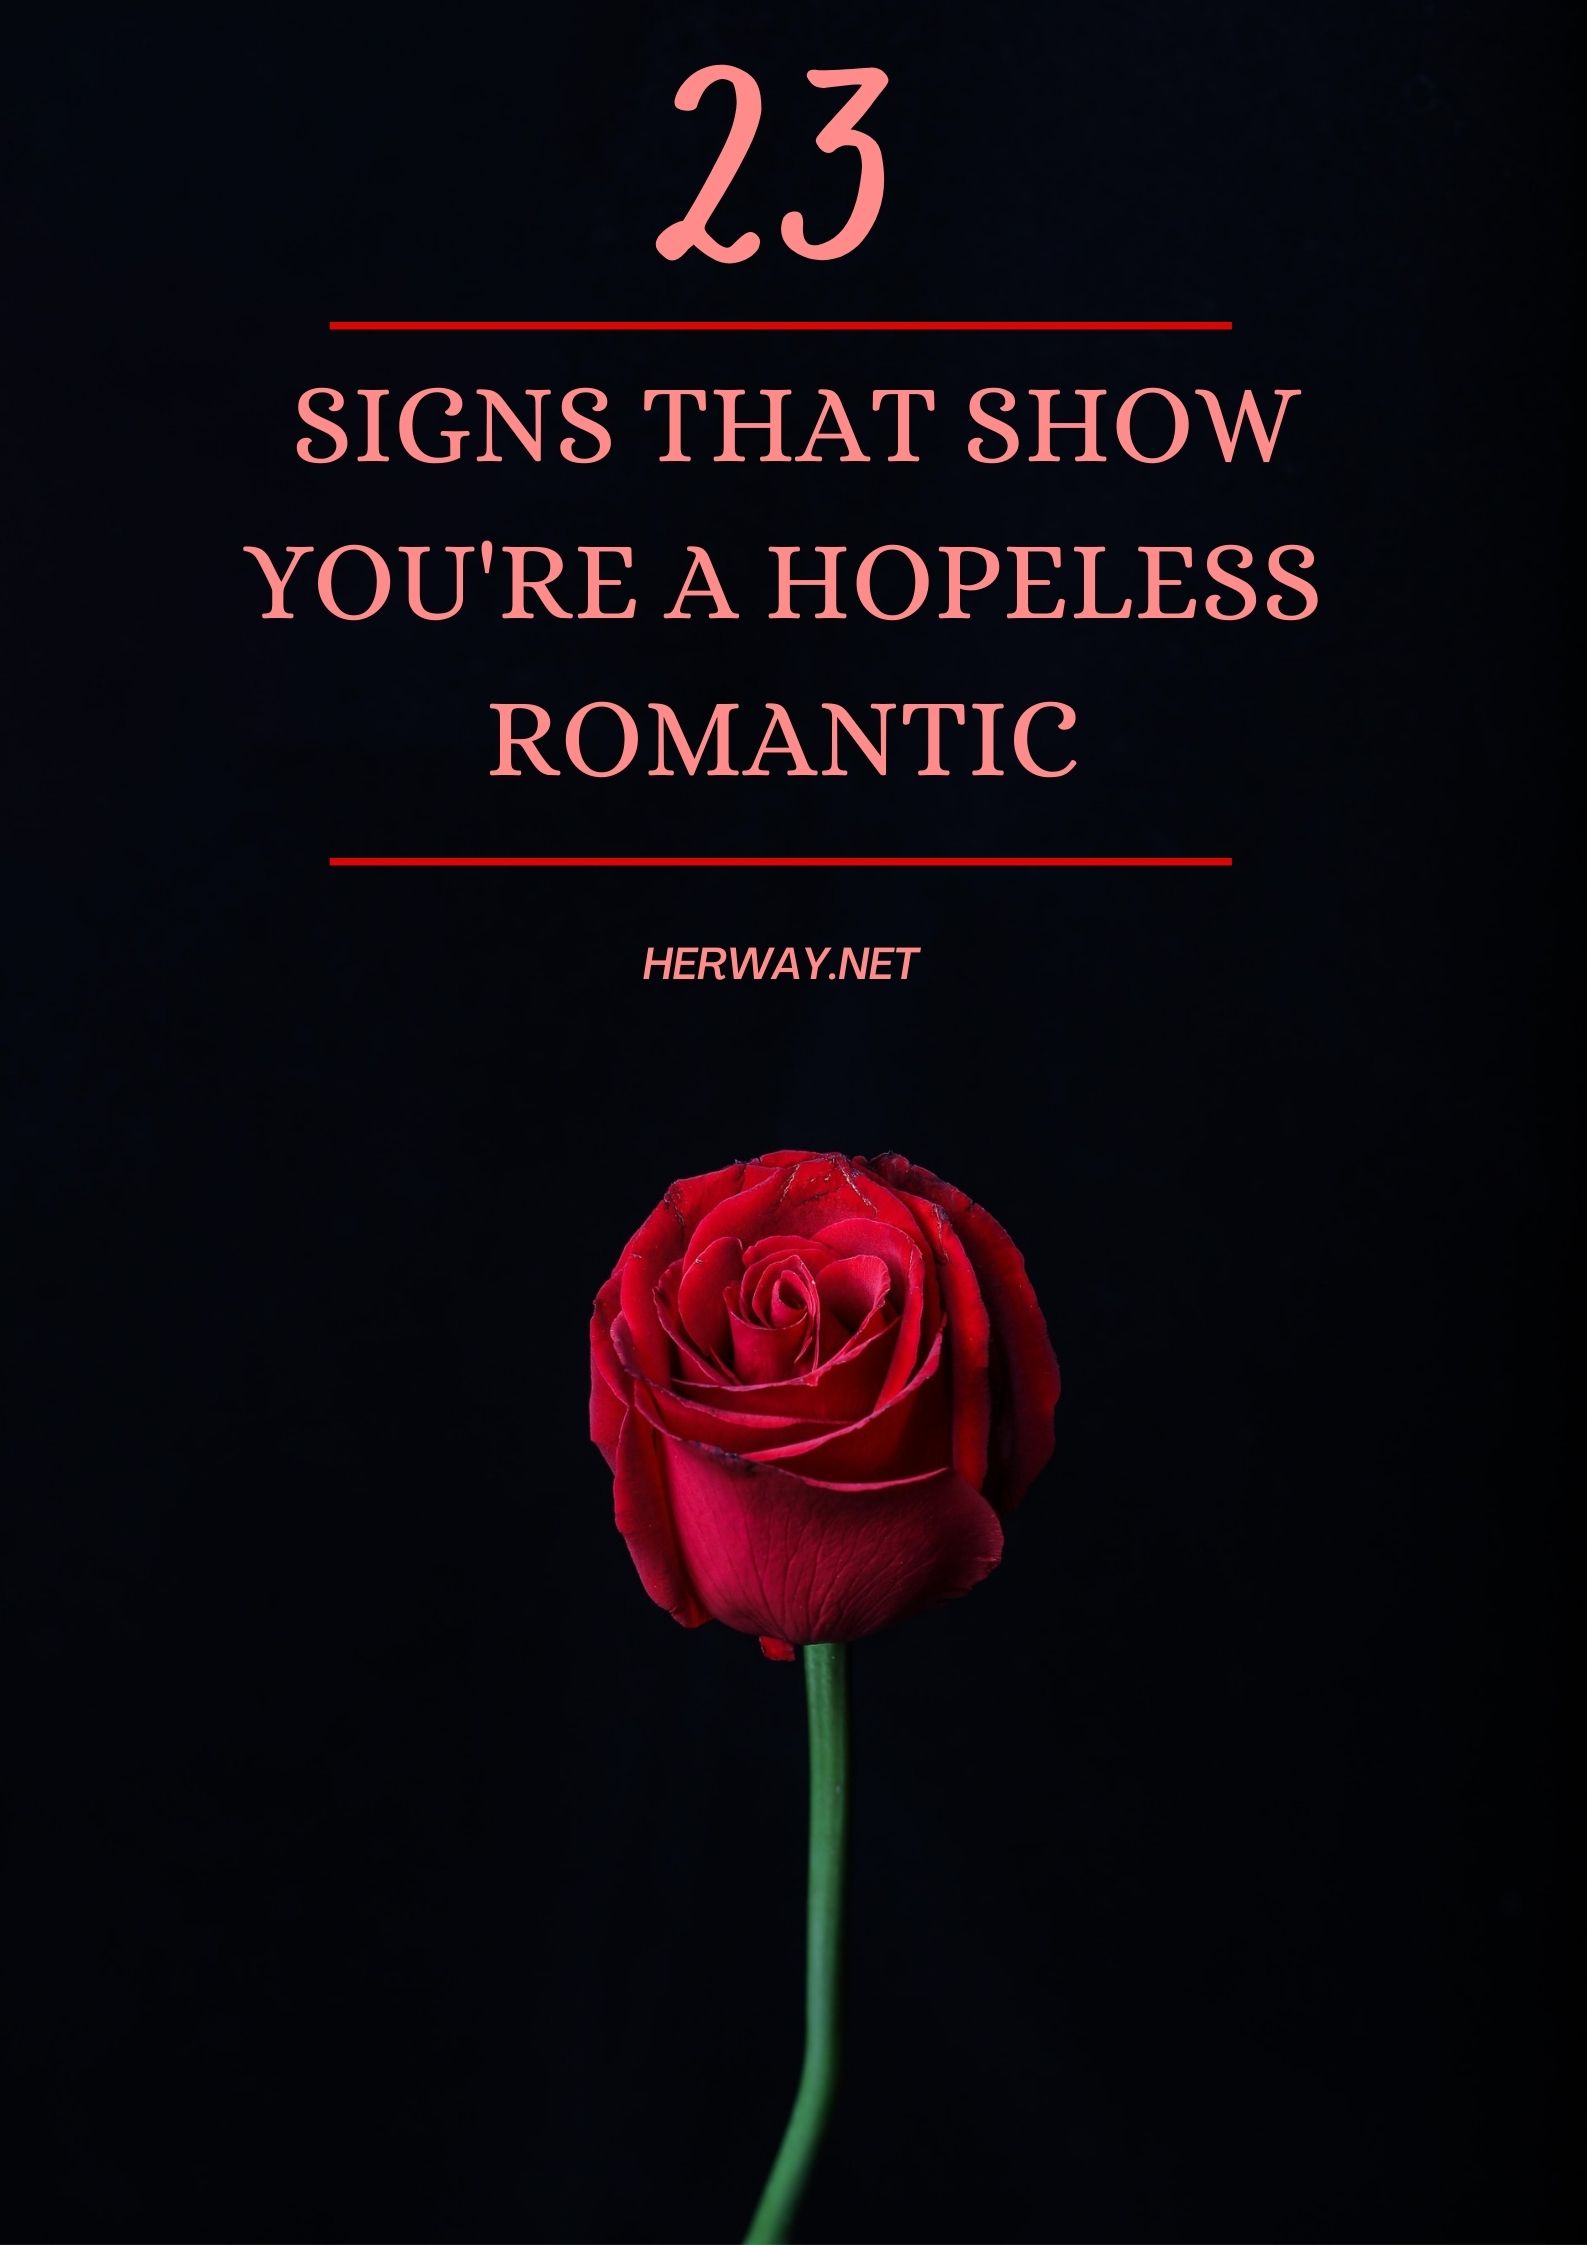 28 segni che dimostrano che sei un romantico senza speranza